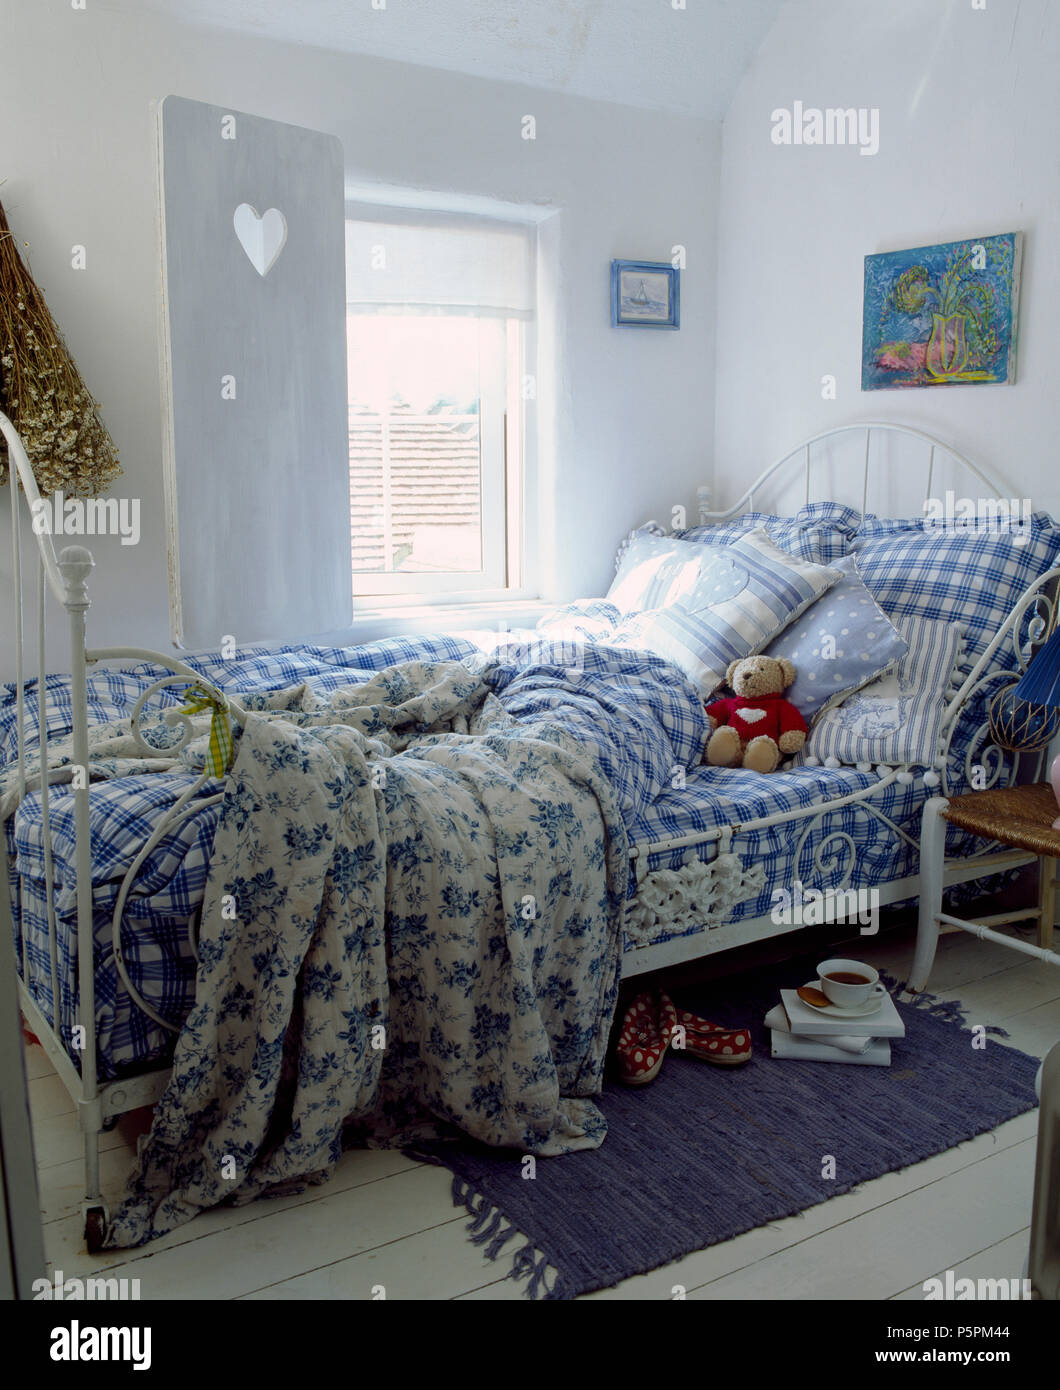 Blue+bianco a scacchi biancheria da letto e piumini floreali su bianco ferro battuto letto matrimoniale in camera da letto del paese con persiane bianche Foto Stock